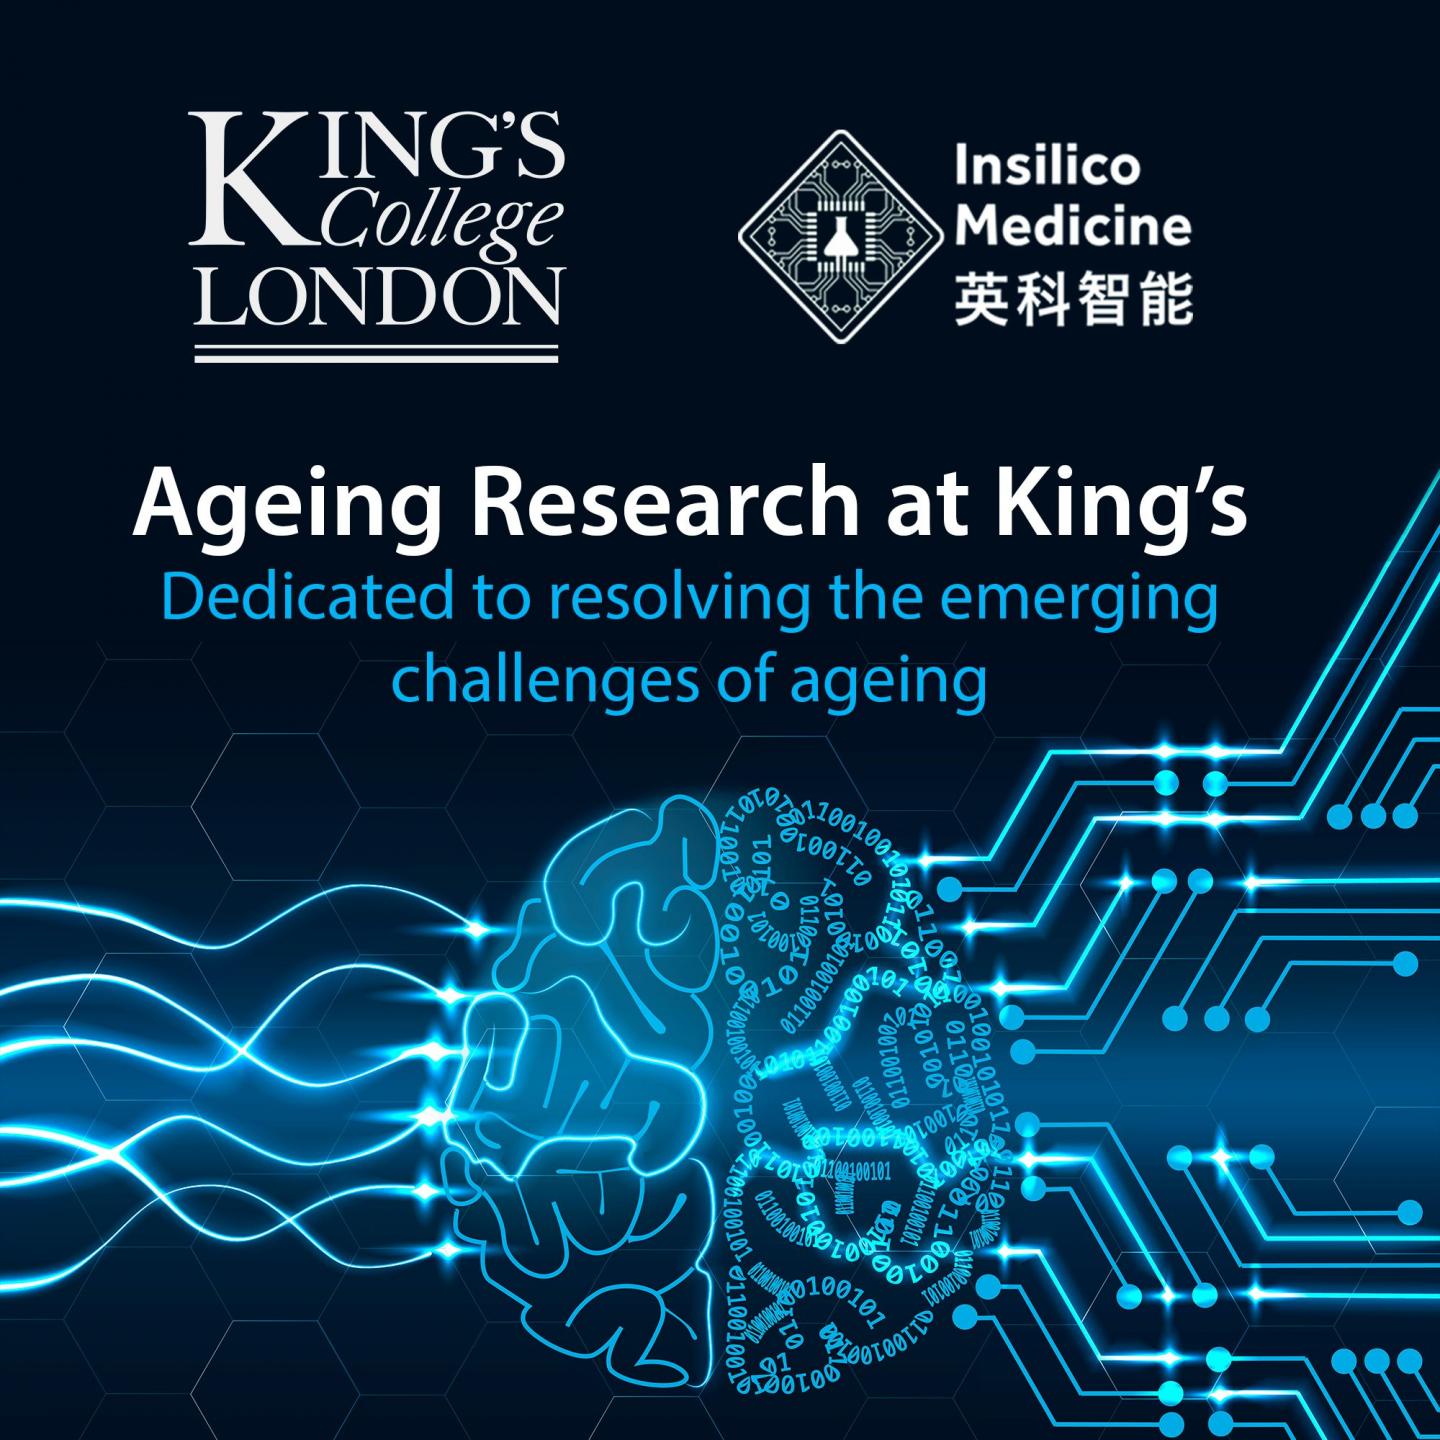 英科智能与伦敦国王学院衰老研究（ARK）开展合作，共同致力健康寿命和长寿研究